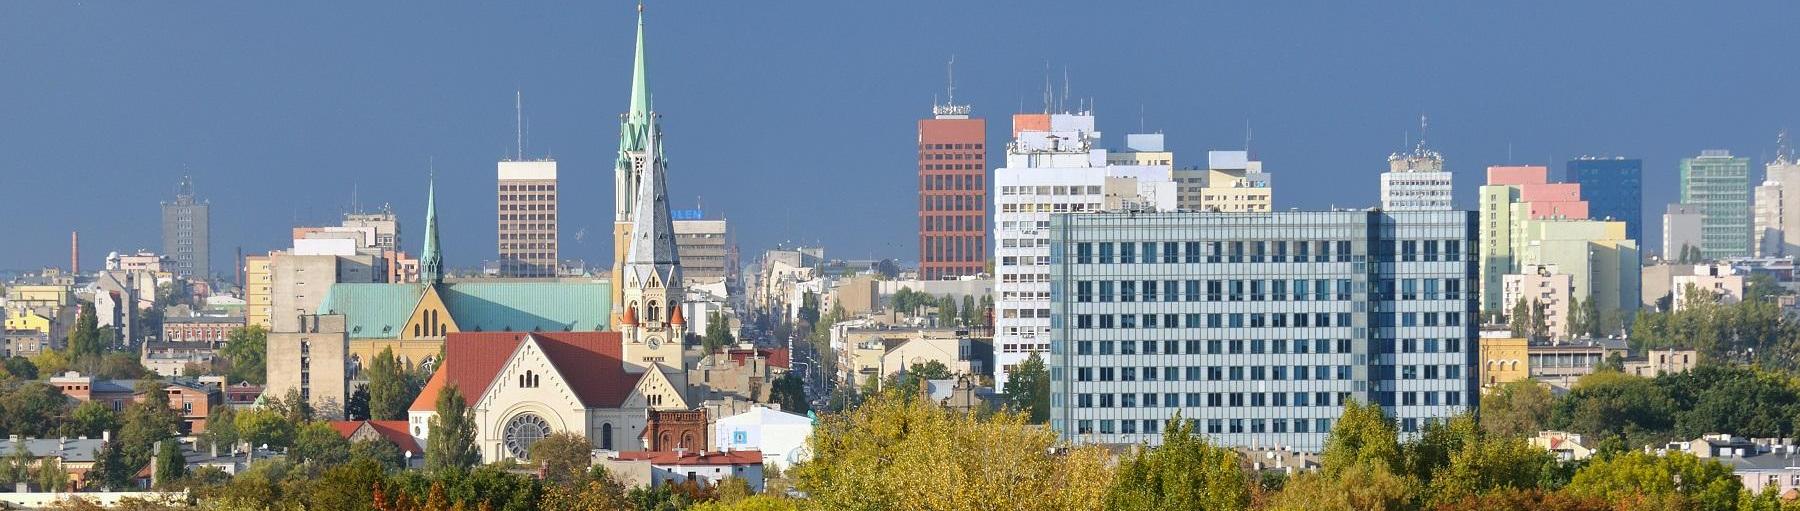 Początek zmian w centrum Łodzi. Fot. Whitelook/Shutterstock